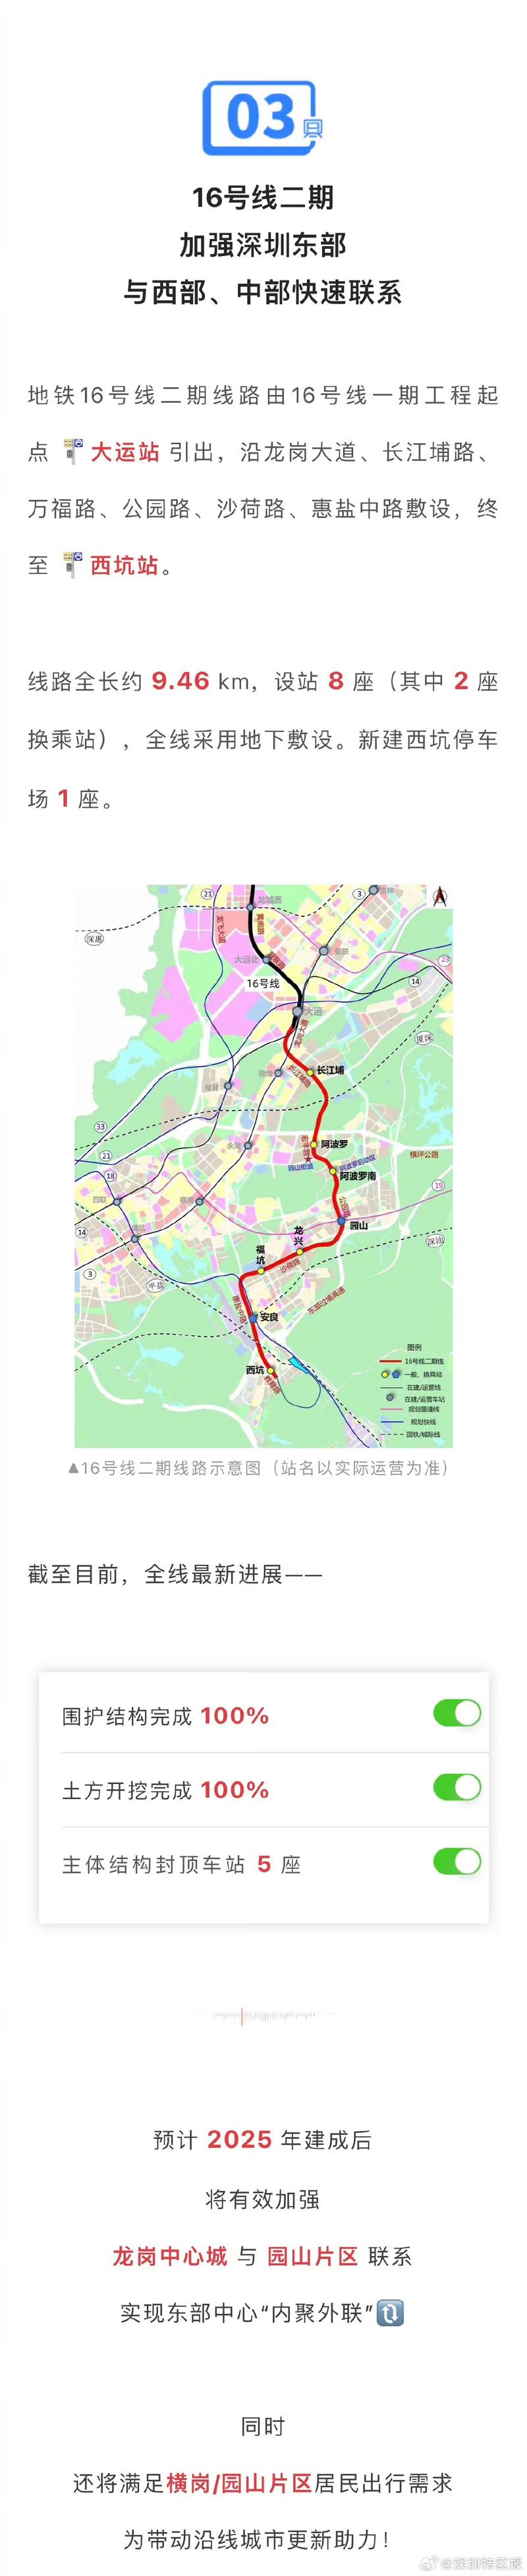 【深圳地铁16号线二期线路预计2025年通车】最近,深圳多条在建地铁